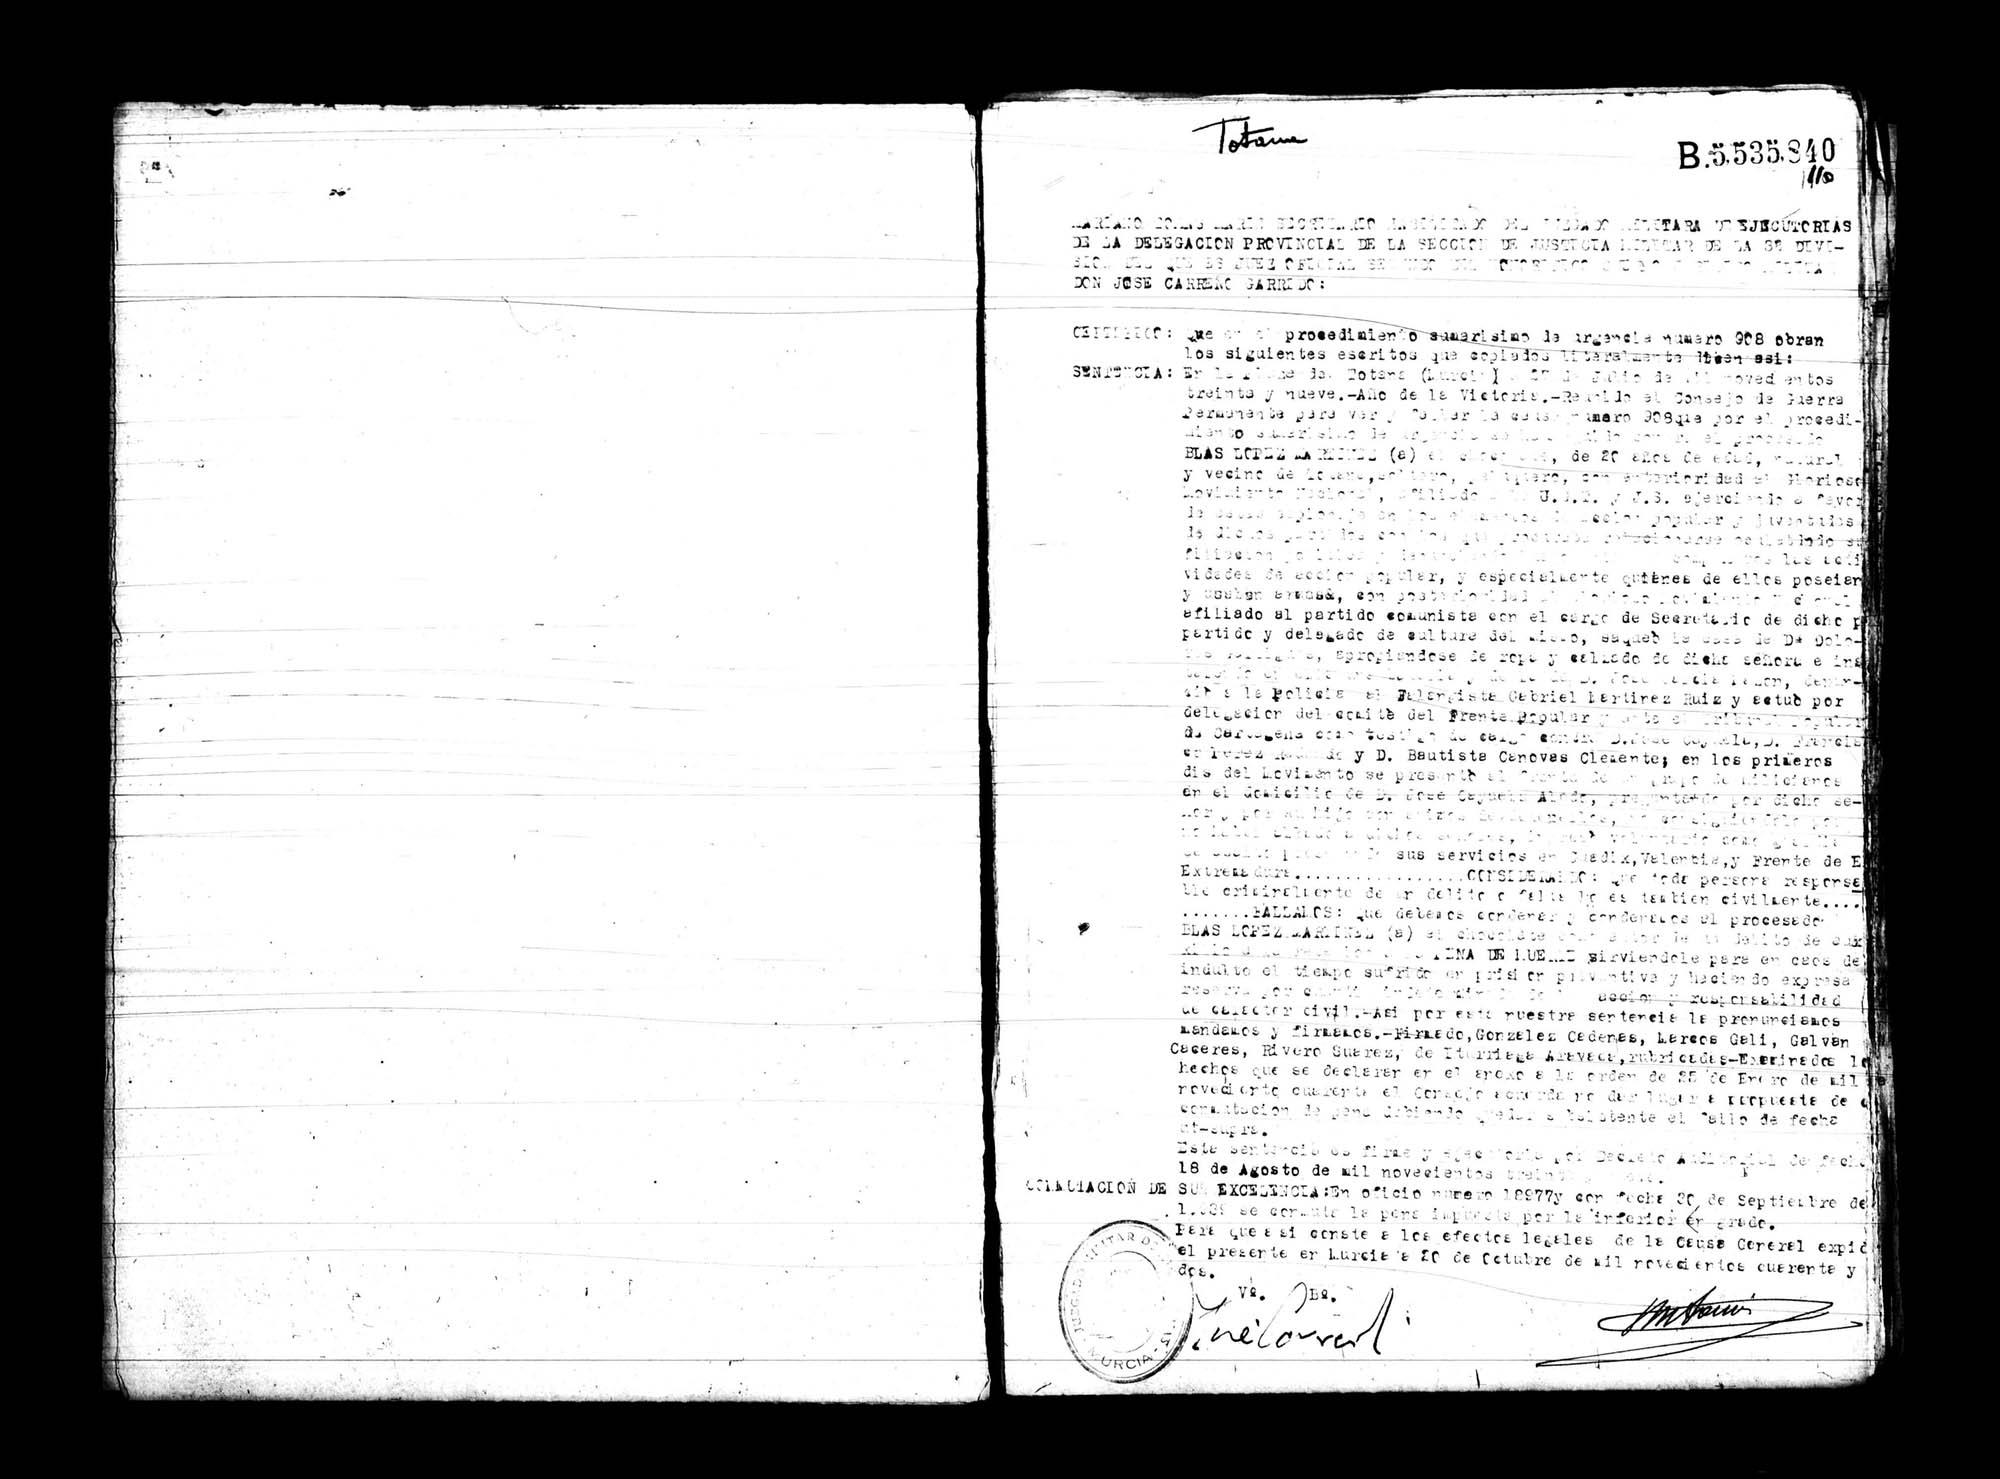 Certificado de la sentencia pronunciada contra Blas López Martínez, causa 908, el 27 de julio de 1939 en Totana.